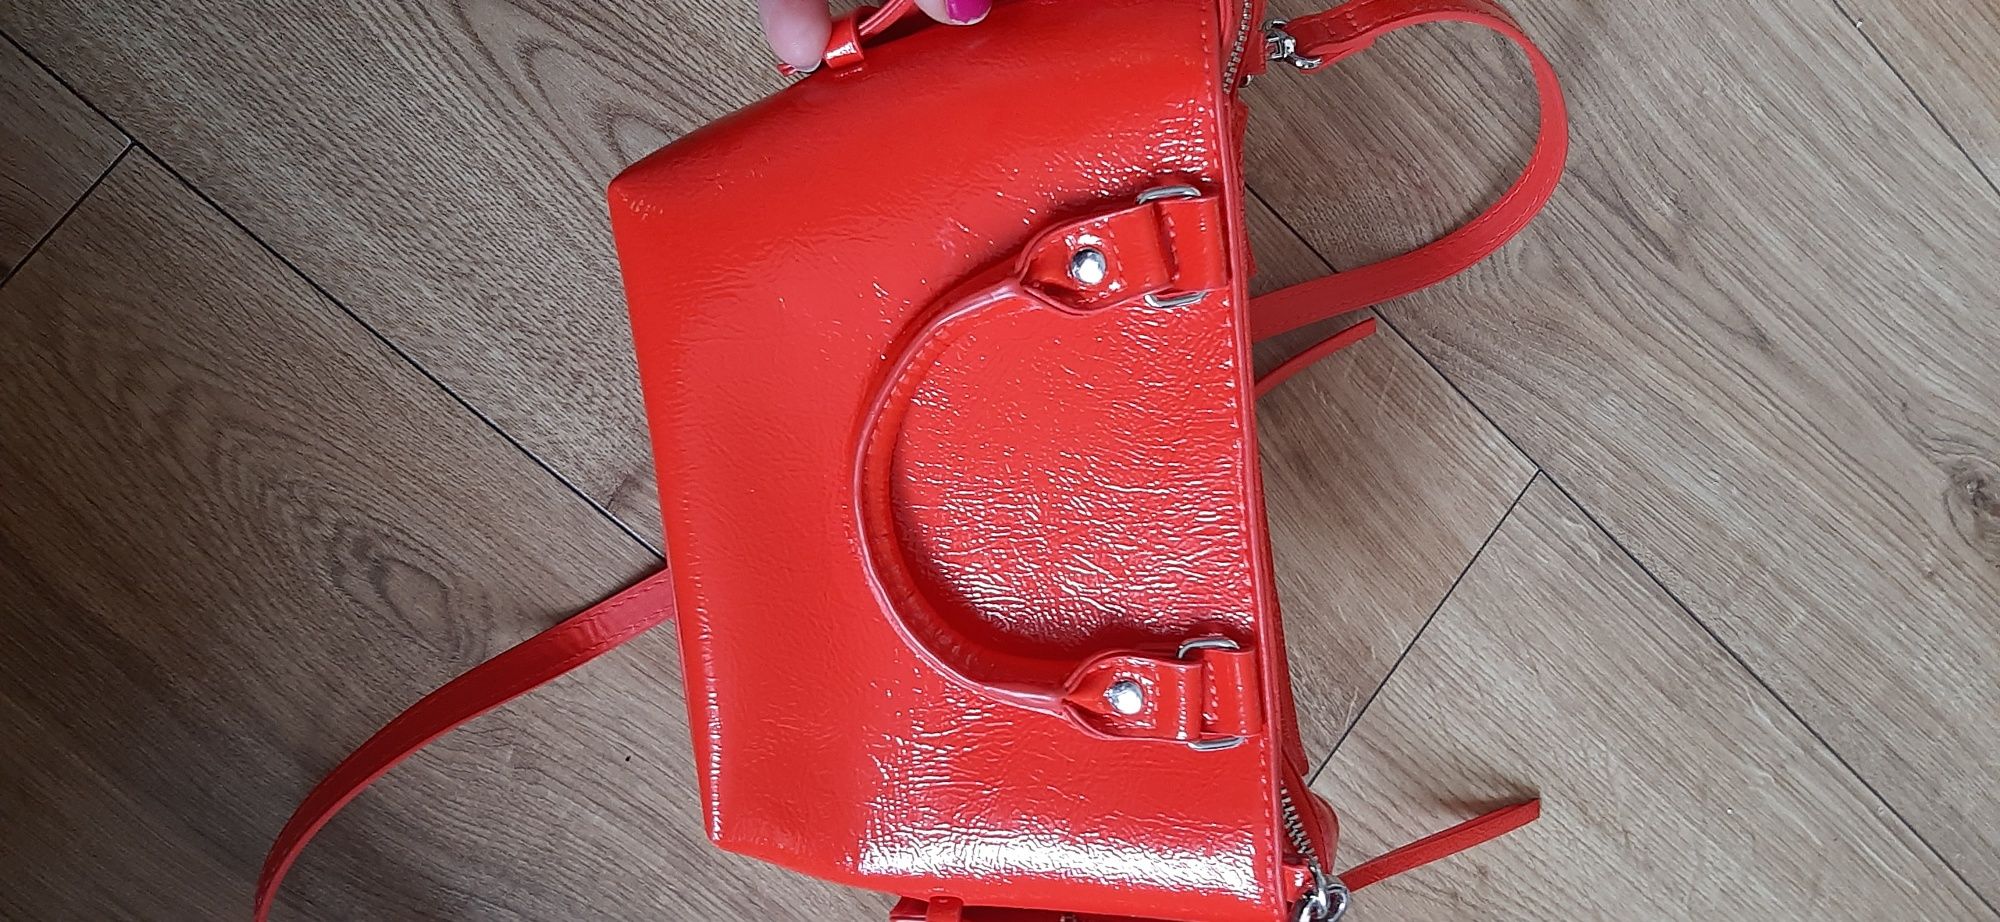 Czerwona torebka lakierowana H&M mała